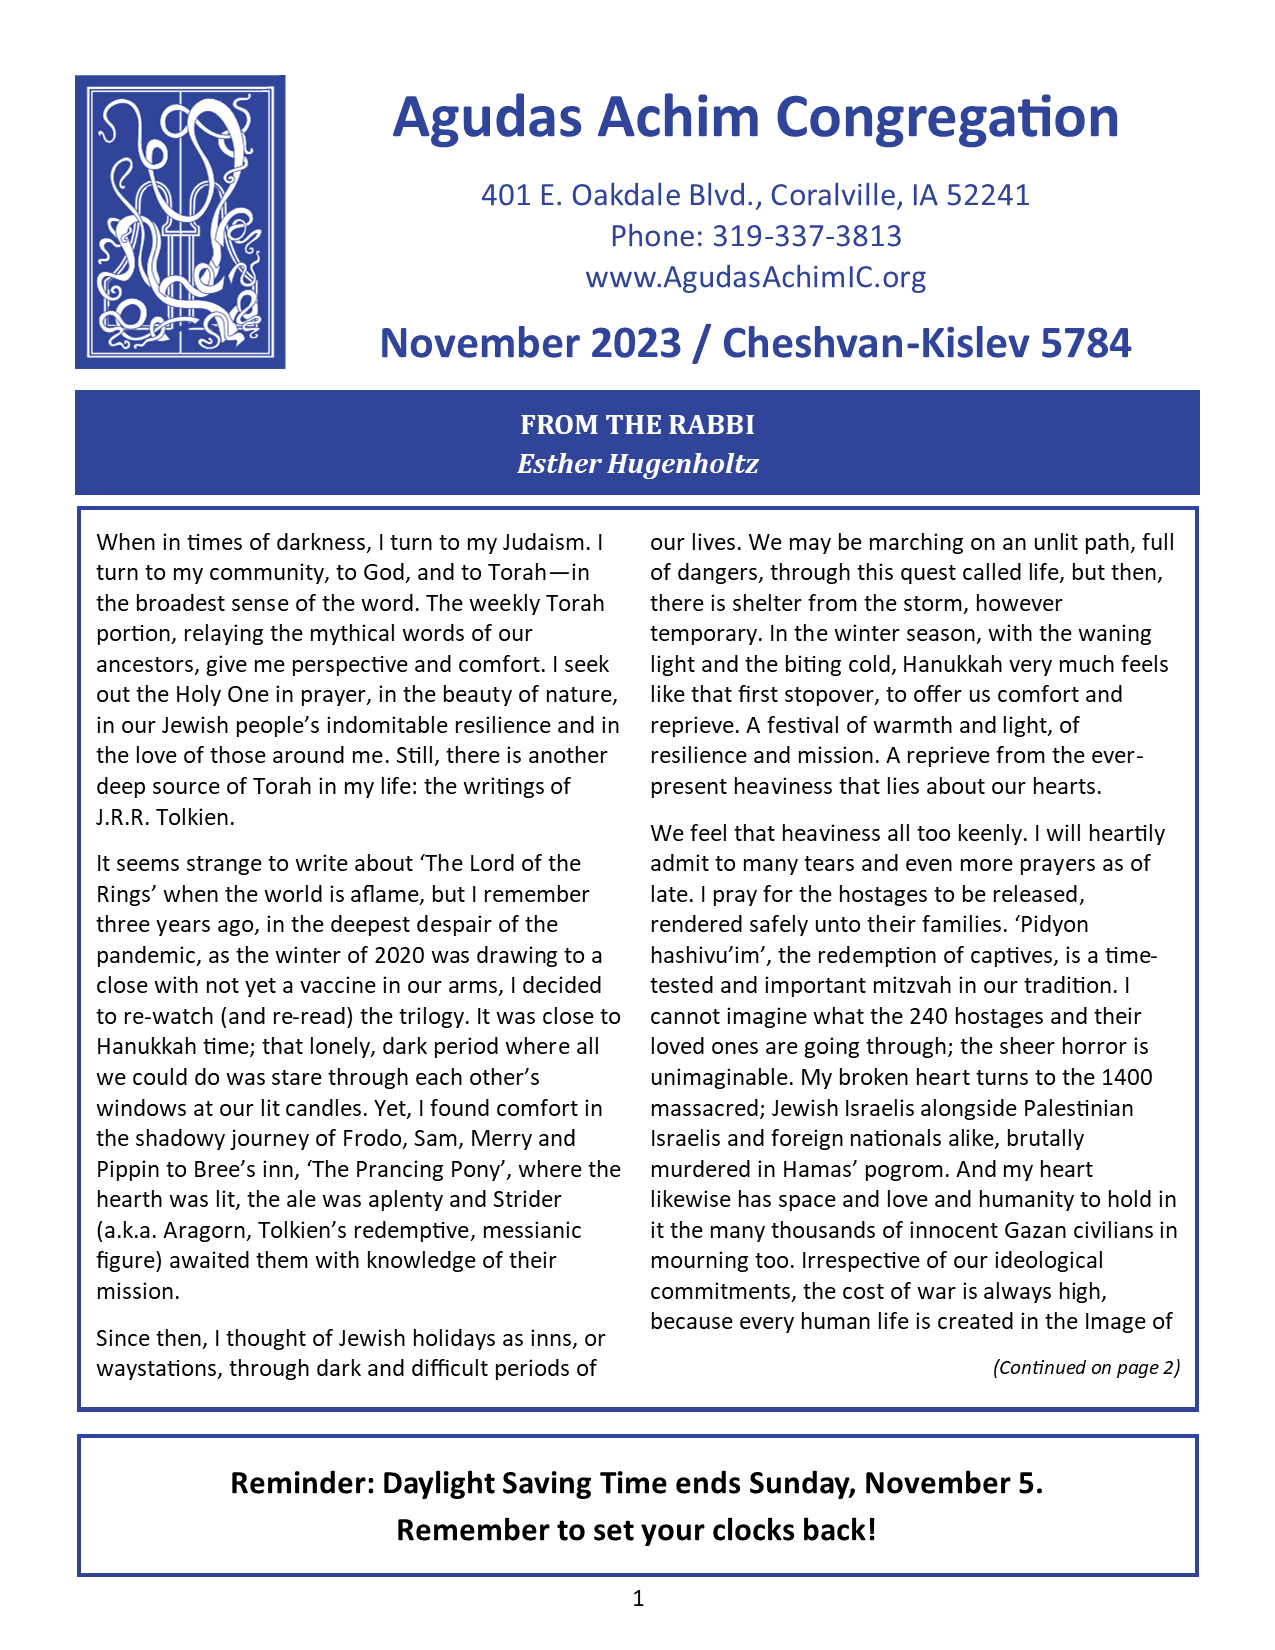 November 2023 Bulletin